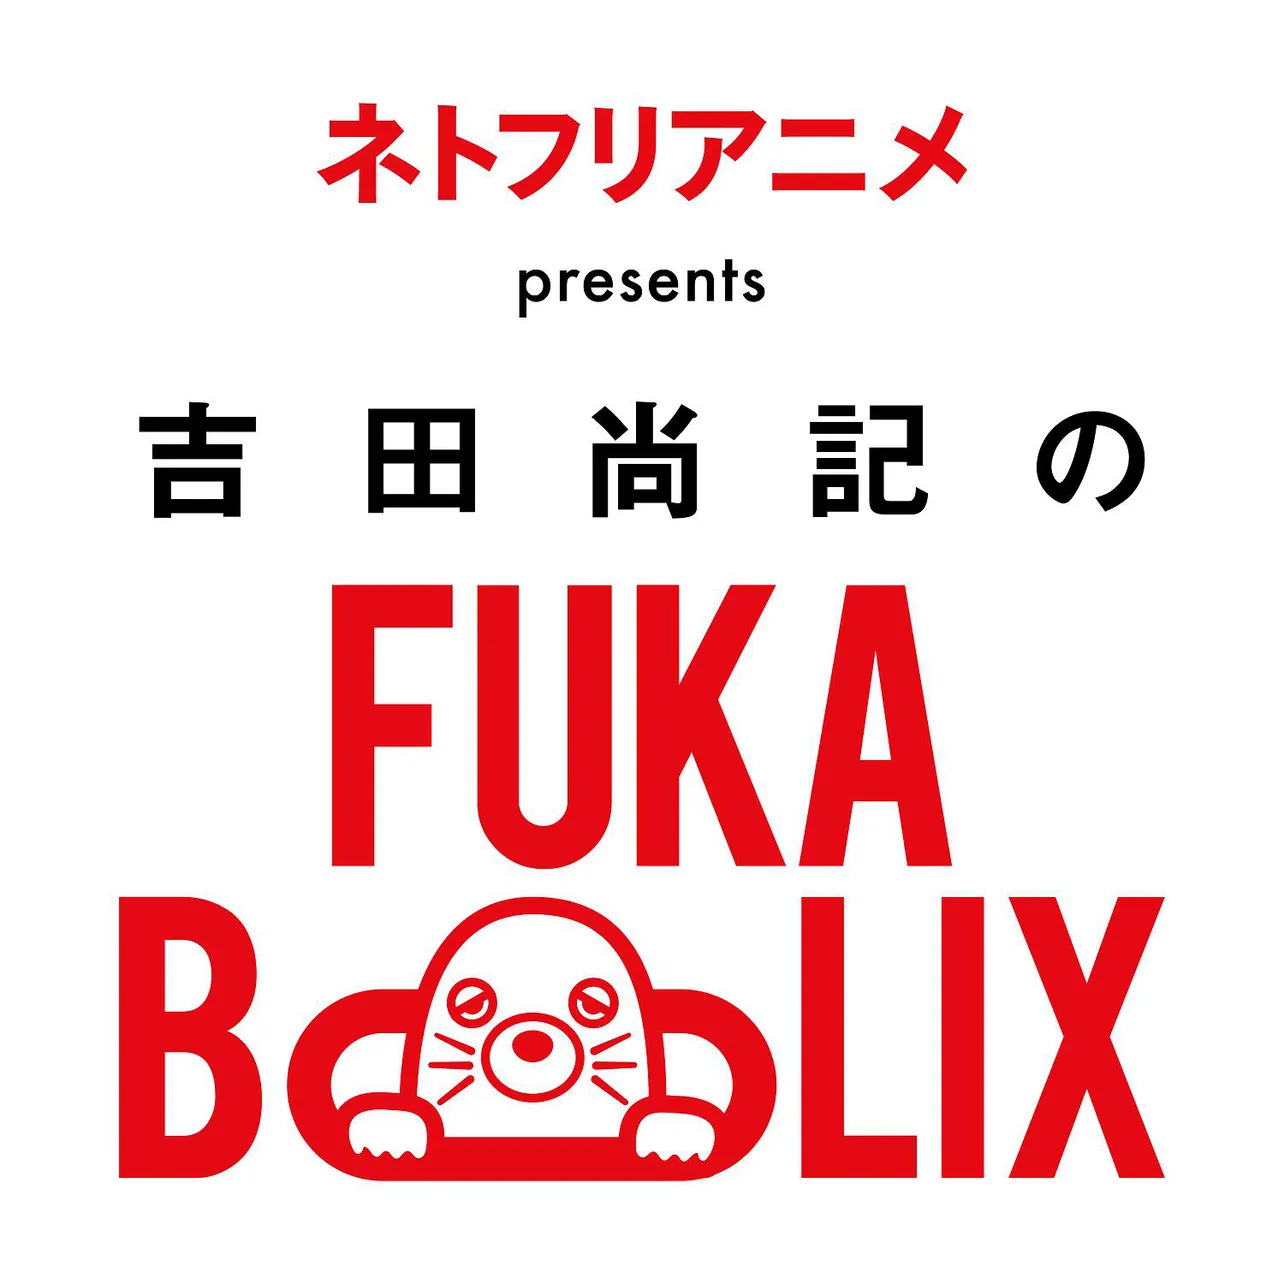 ニッポン放送とNetflixが手を組んだ特別番組「ネトフリアニメpresents 吉田尚記のFUKABOLIX」がスタートする